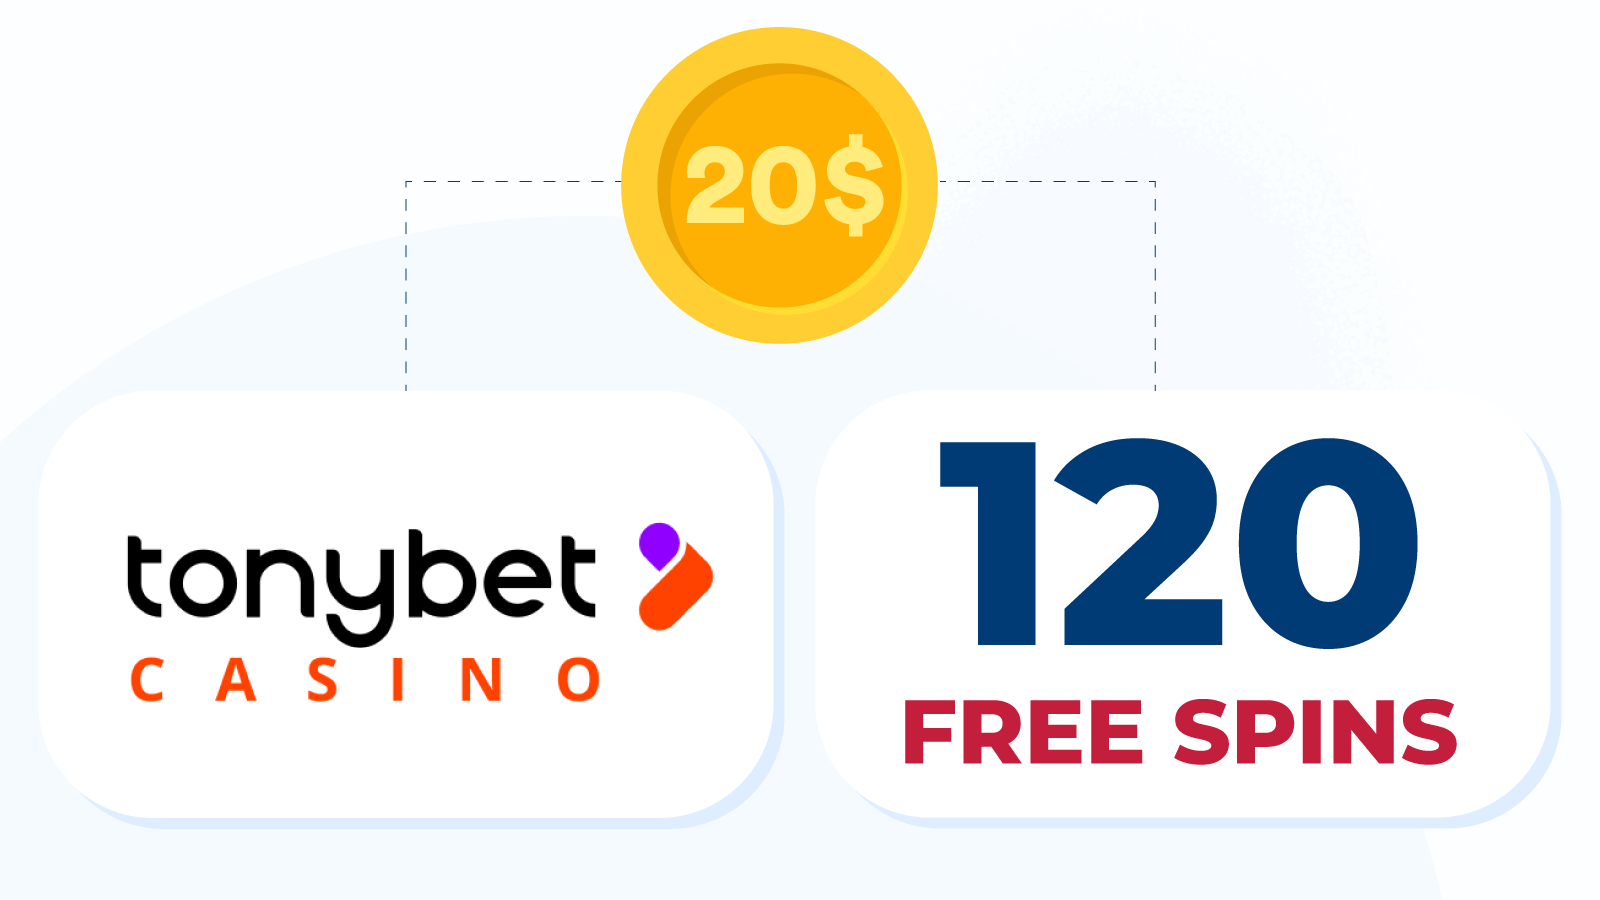 Deposit $20 get 120 free spins at TonyBet Casino